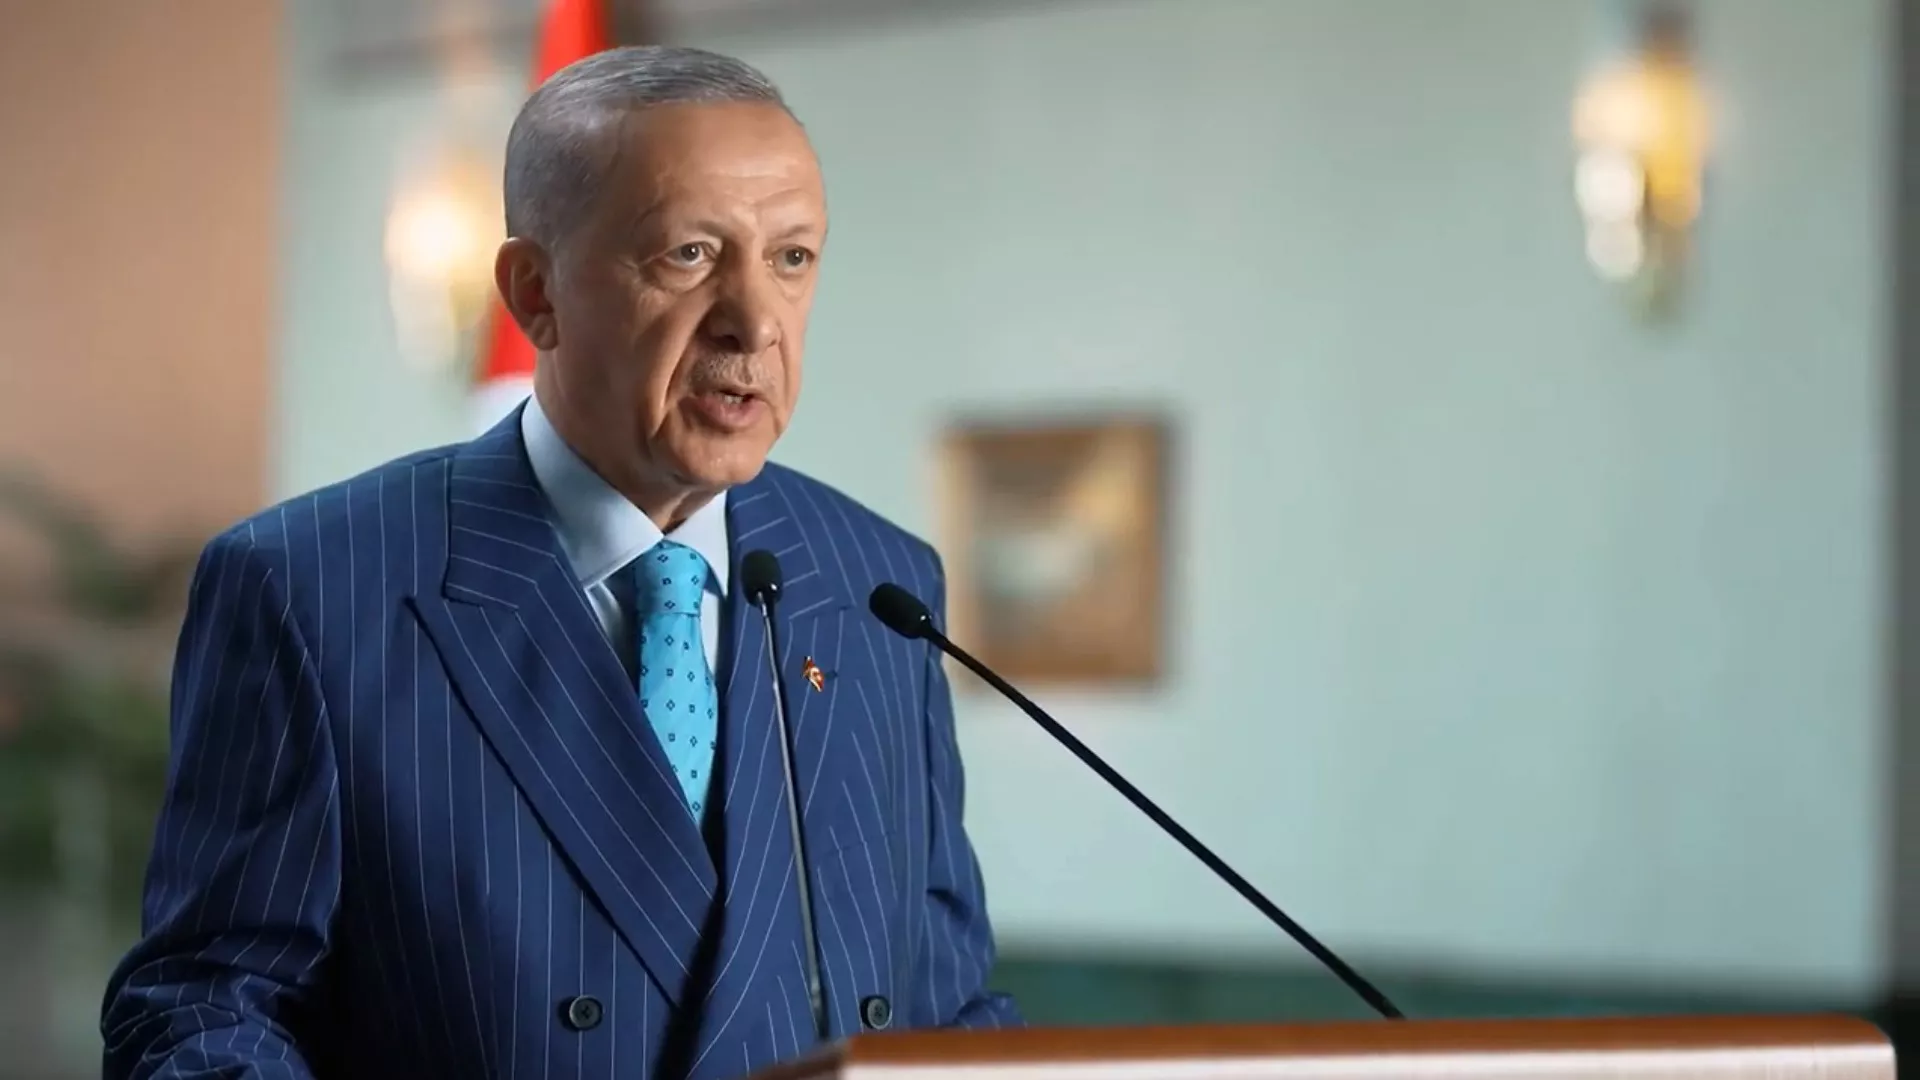 Turkiyeyi bir spor ulkesi haline getirecegiz 1 - politika - haberton